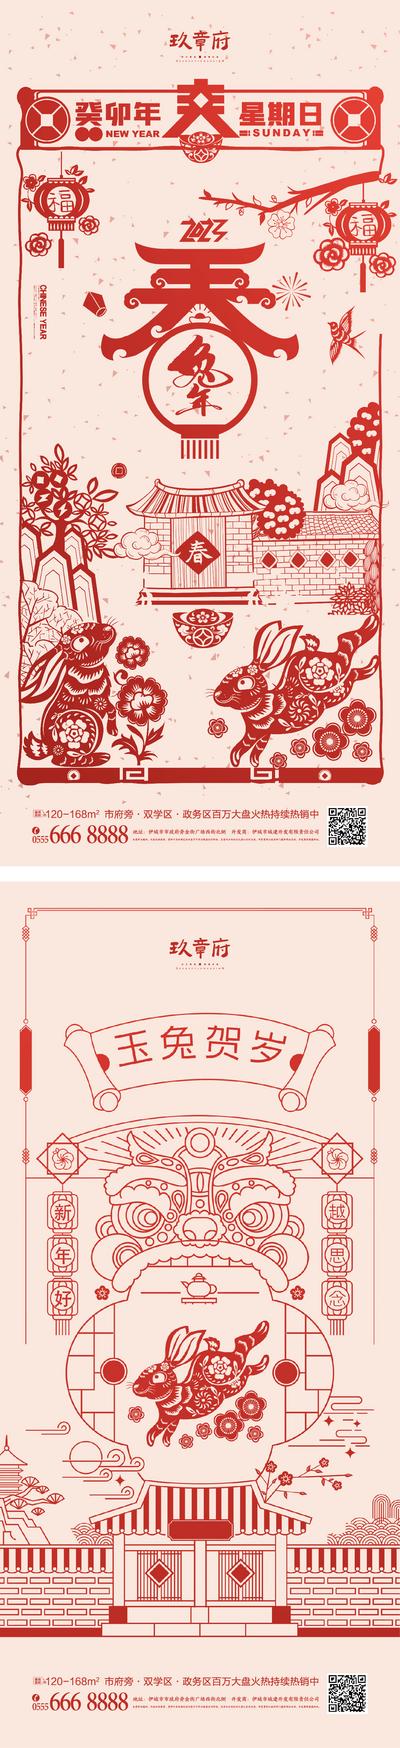 南门网 海报 中国传统节日  兔年 春节 除夕 小年 新年  剪纸  灯笼 插画